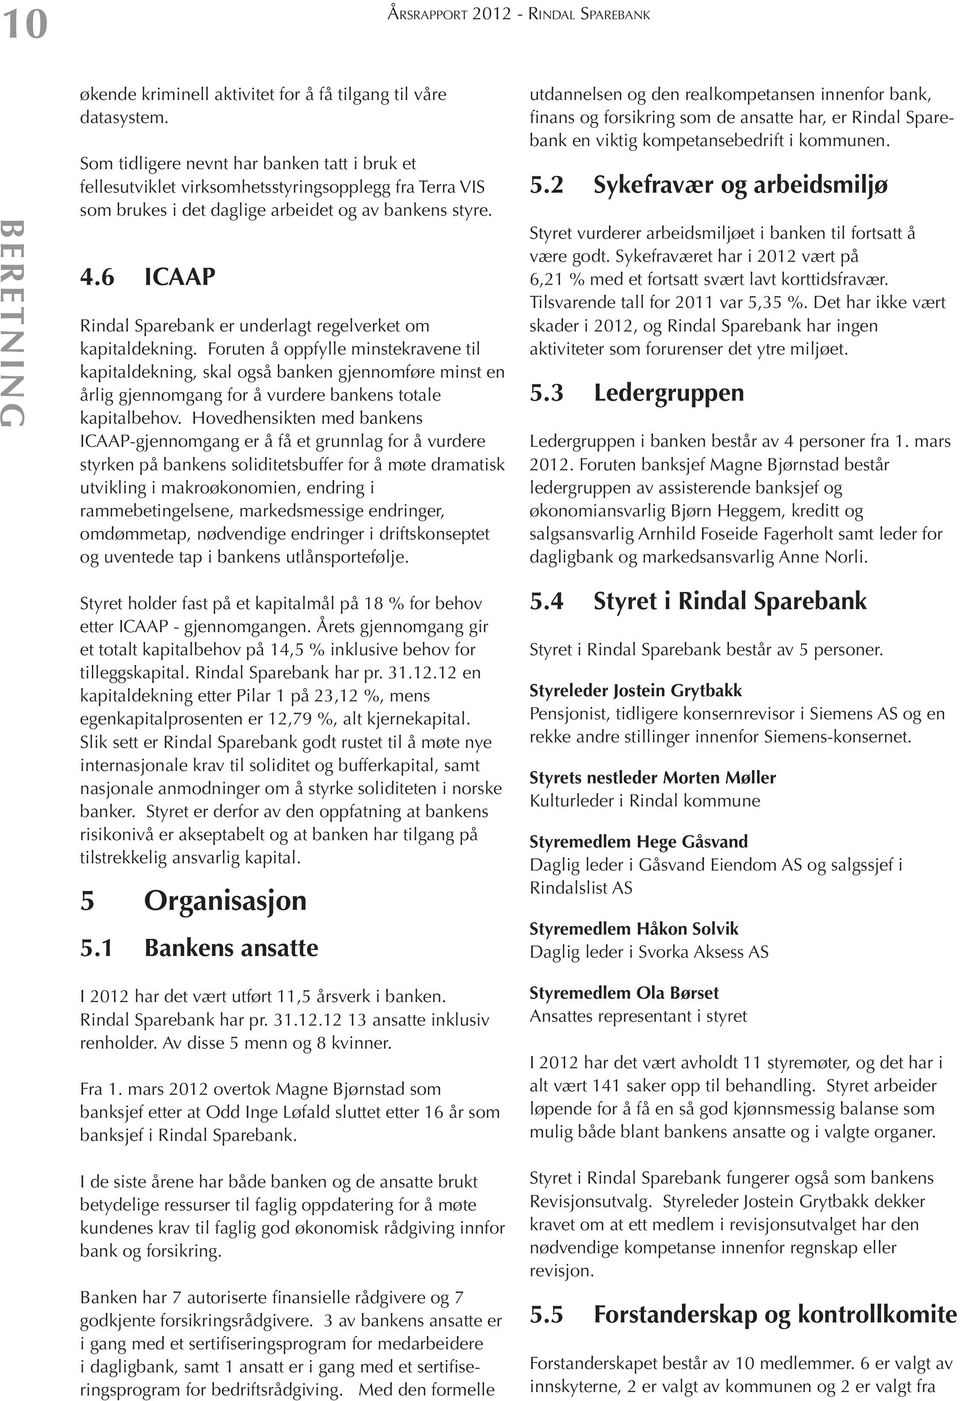 6 ICAAP Rindal Sparebank er underlagt regelverket om kapitaldekning.